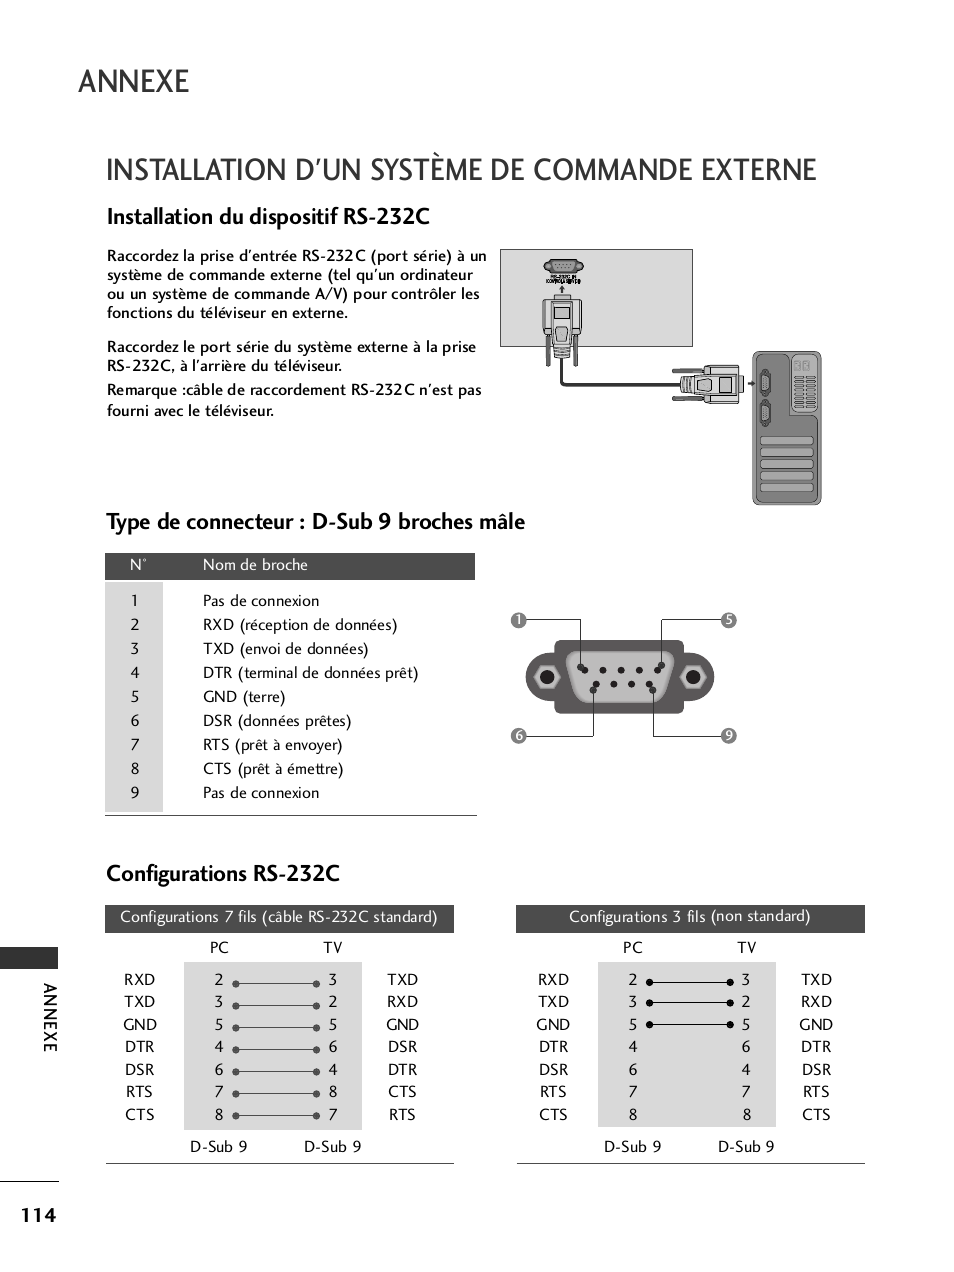 Installation d'un système de commande externe, Annexe, Installation du dispositif rs-232c | LG 50PQ6000 Manuel d'utilisation | Page 116 / 124